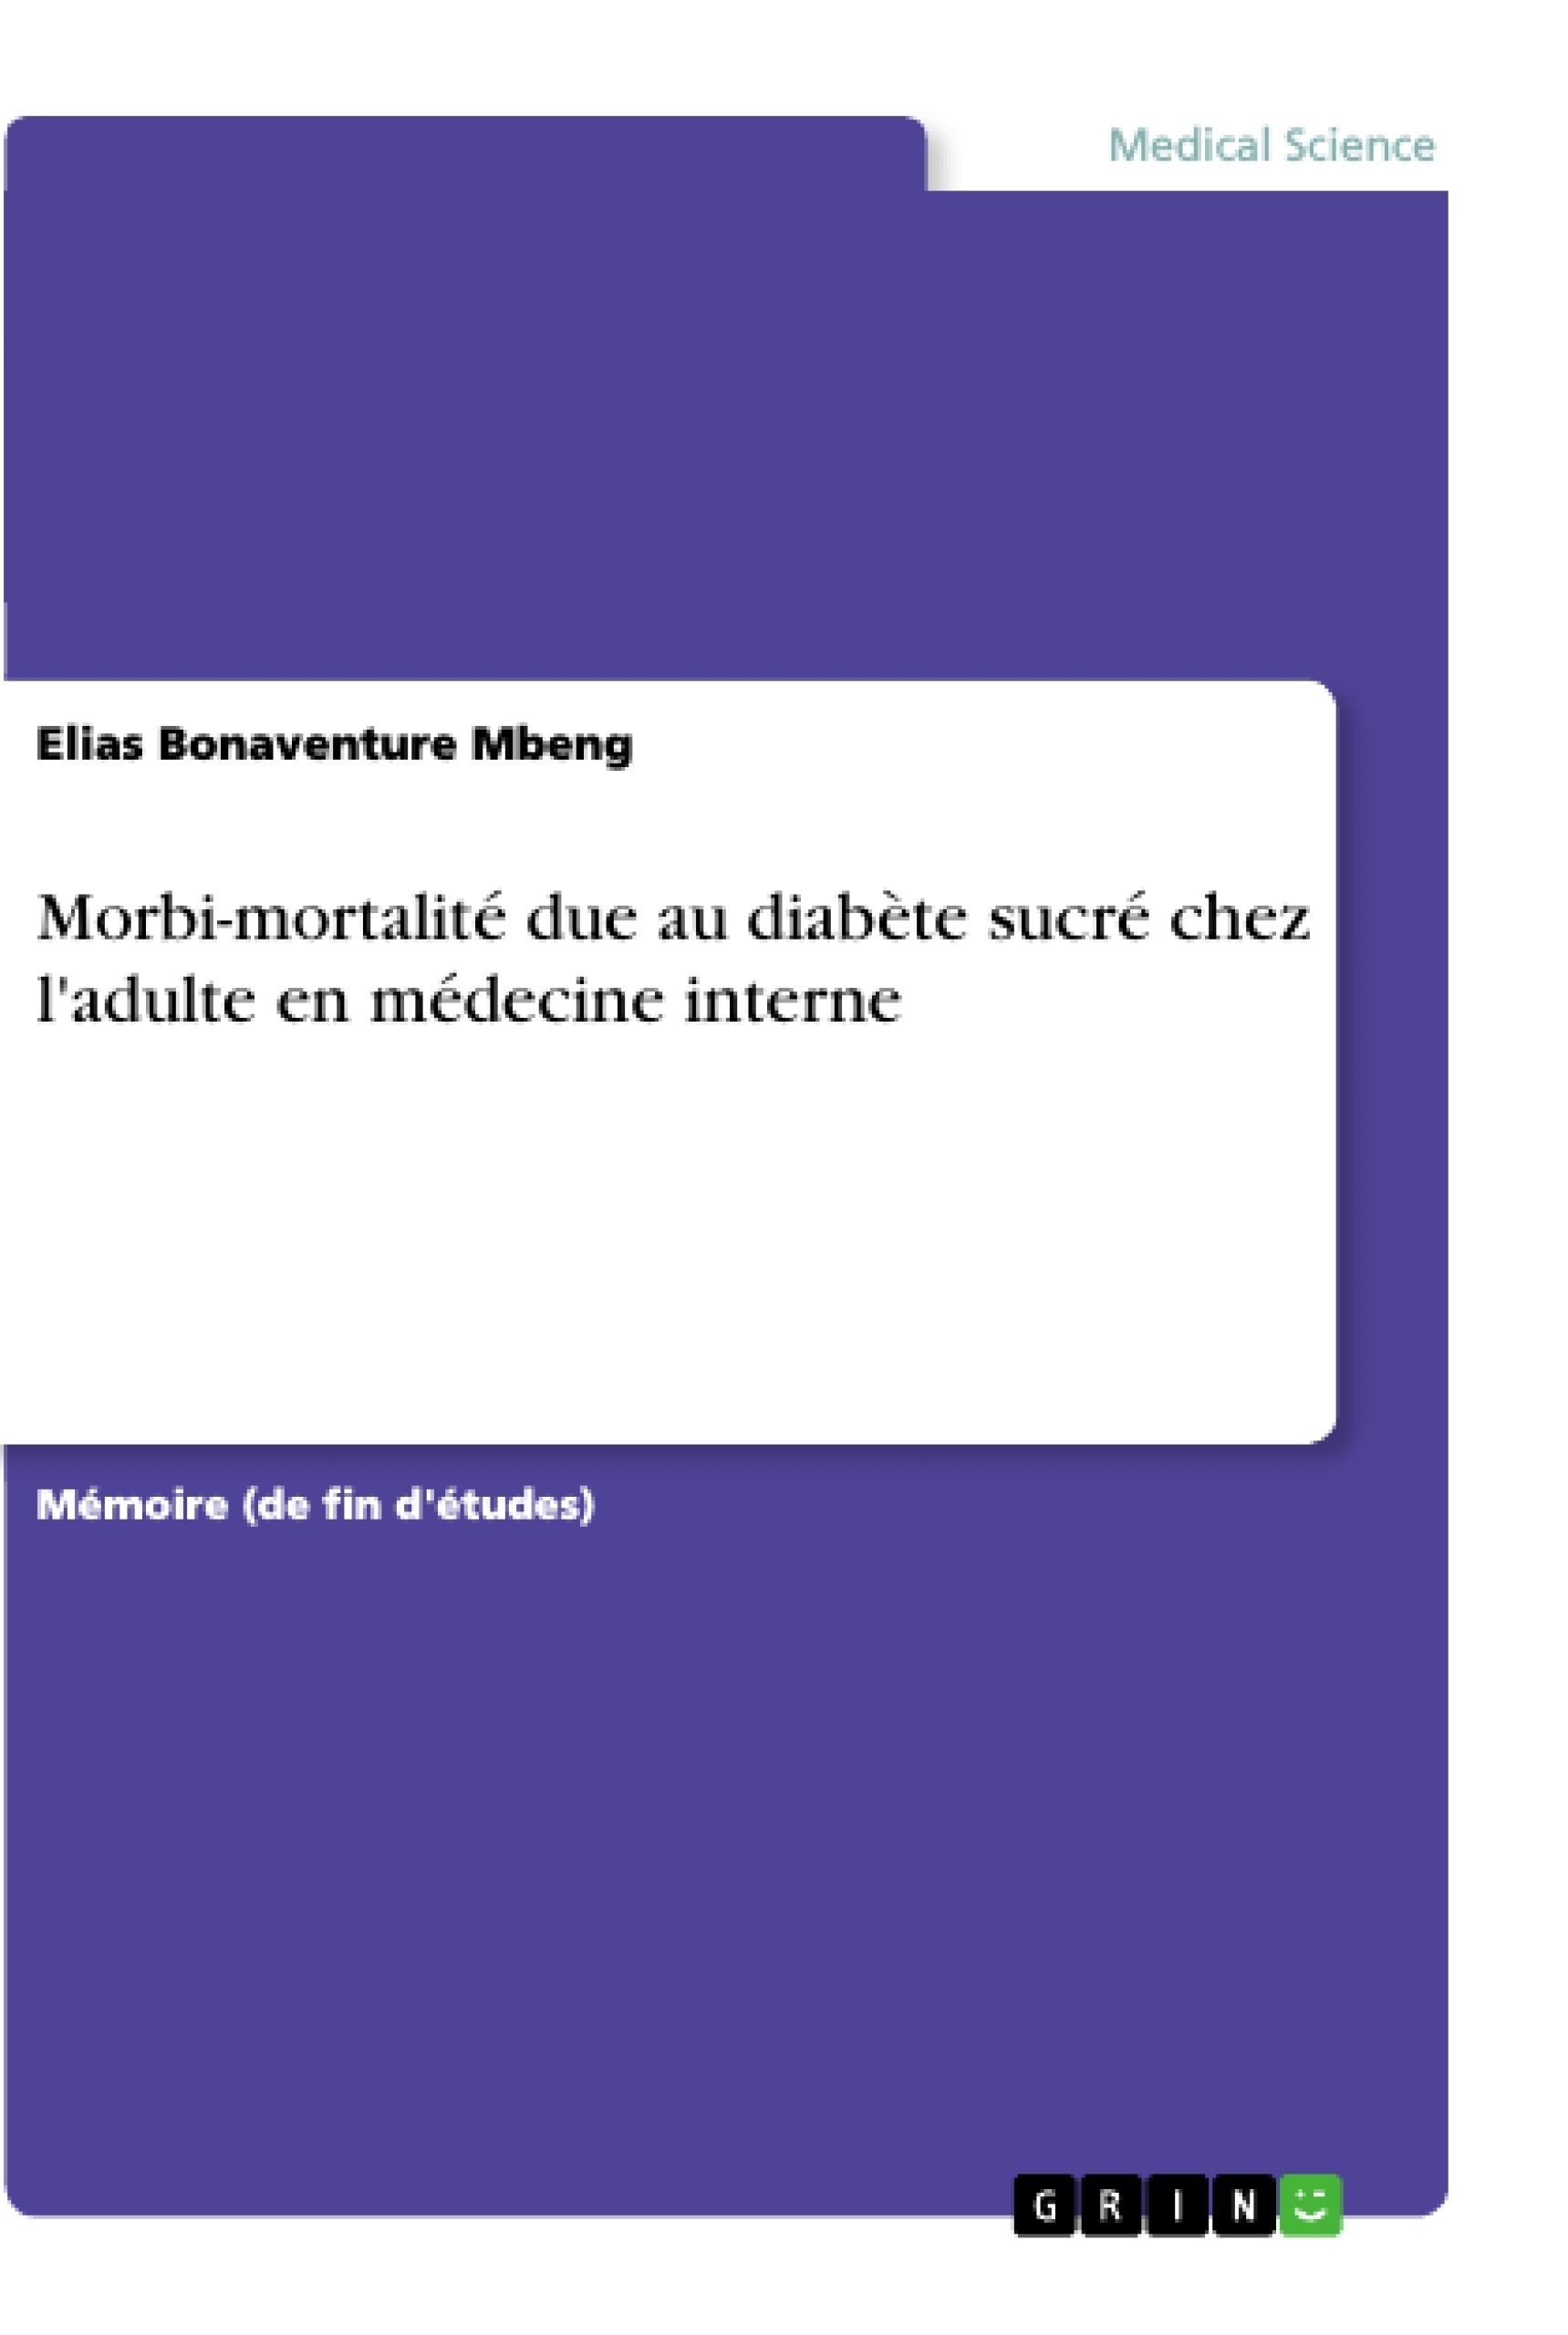 Titre: Morbi-mortalité due au diabète sucré chez l'adulte en médecine interne